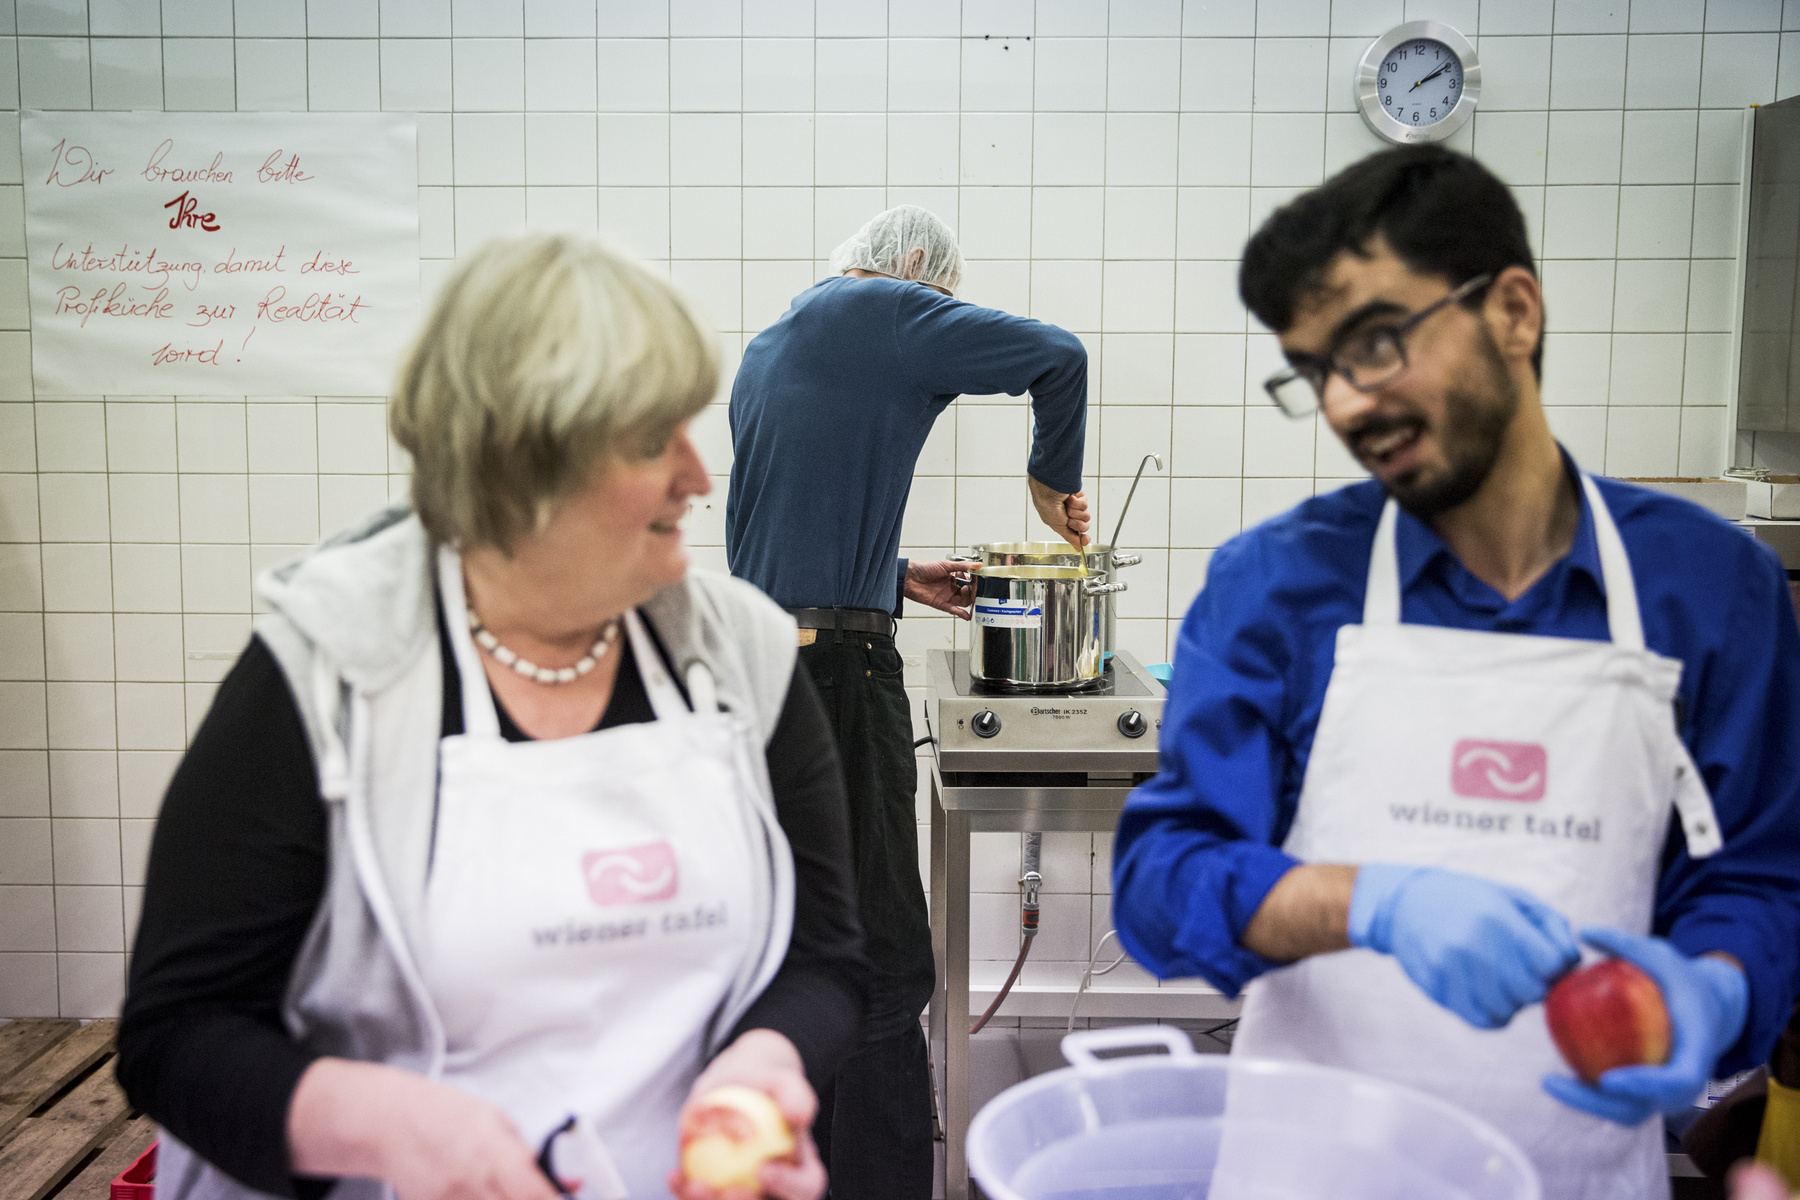 A Wiener Tafel főzős eseményeire sok menekült jár, hiszen itt találkozni és beszélgetni tudnak a helyiekkel, amire máshol nincs lehetőségük.